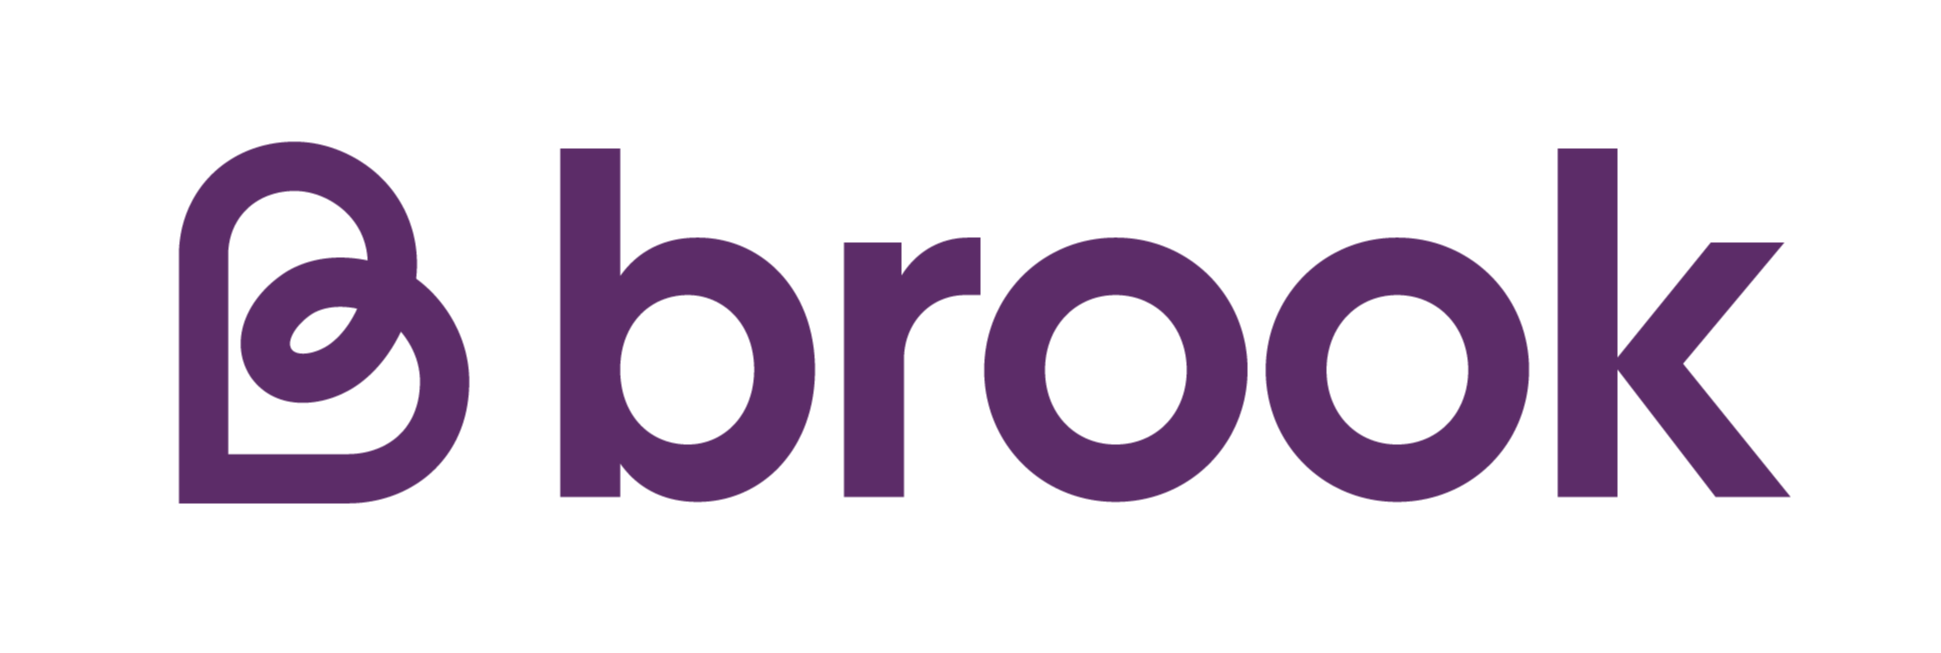 Brook logo